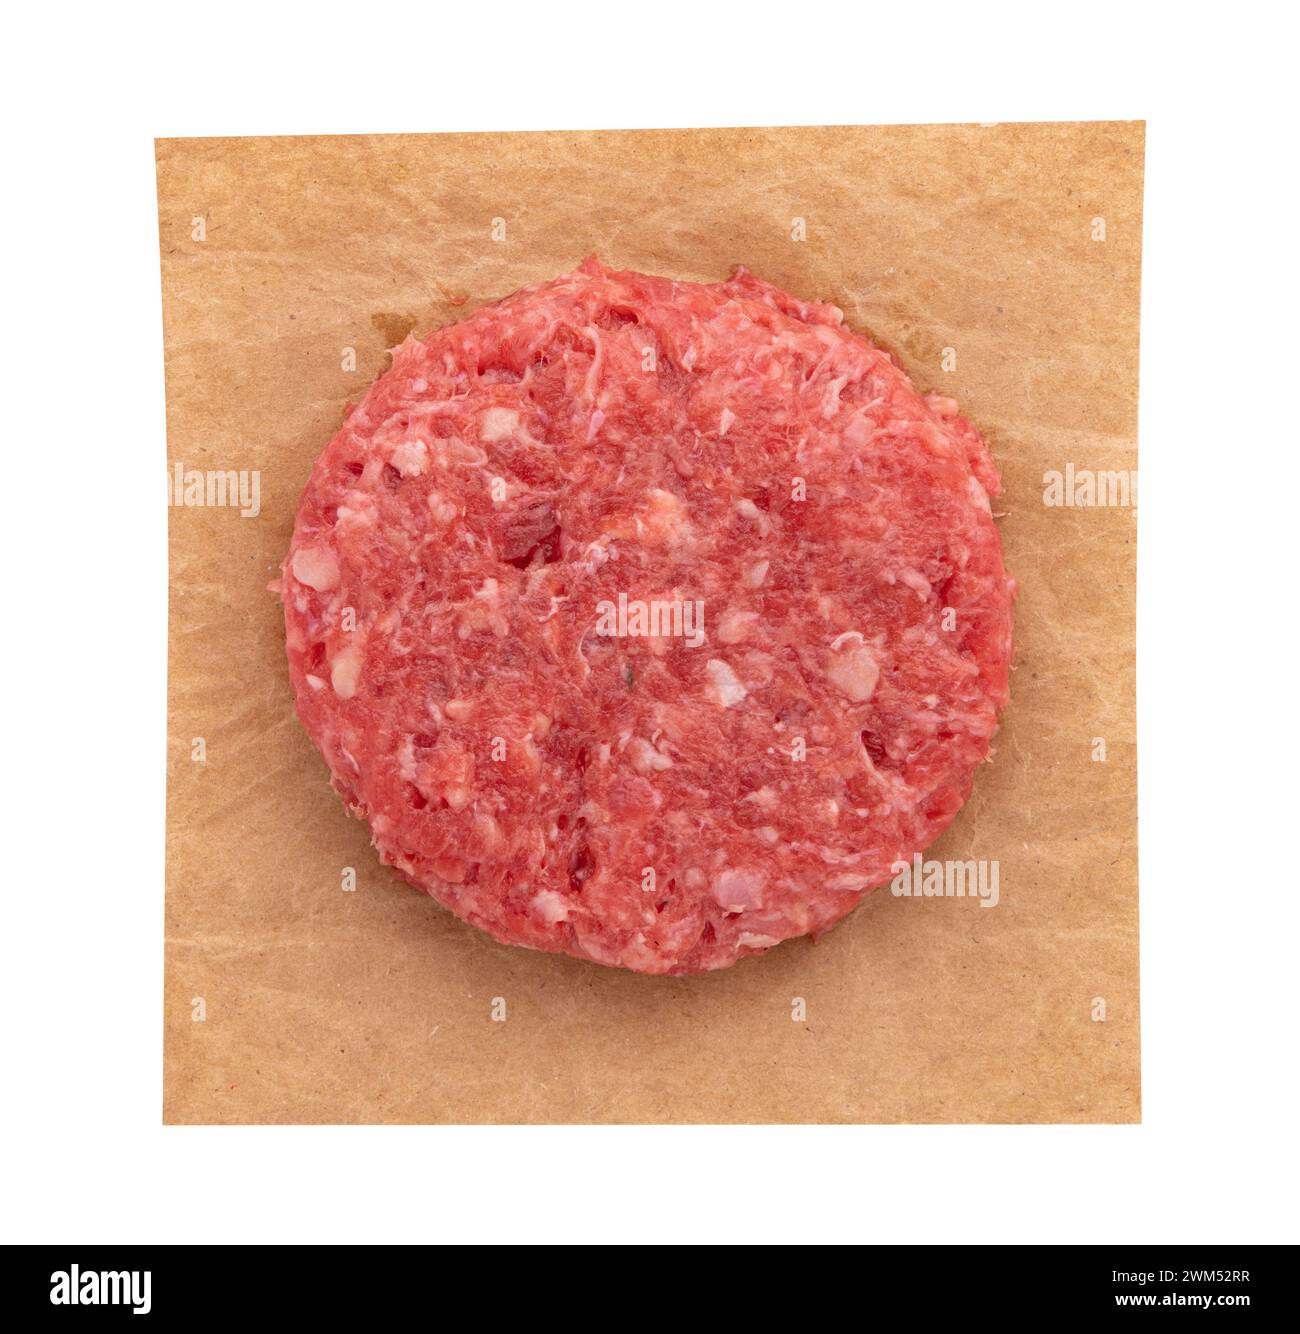 côtelette de hamburger de viande crue fraîche sur papier parchemin isolé sur fond blanc avec chemin de découpage, vue de dessus Banque D'Images